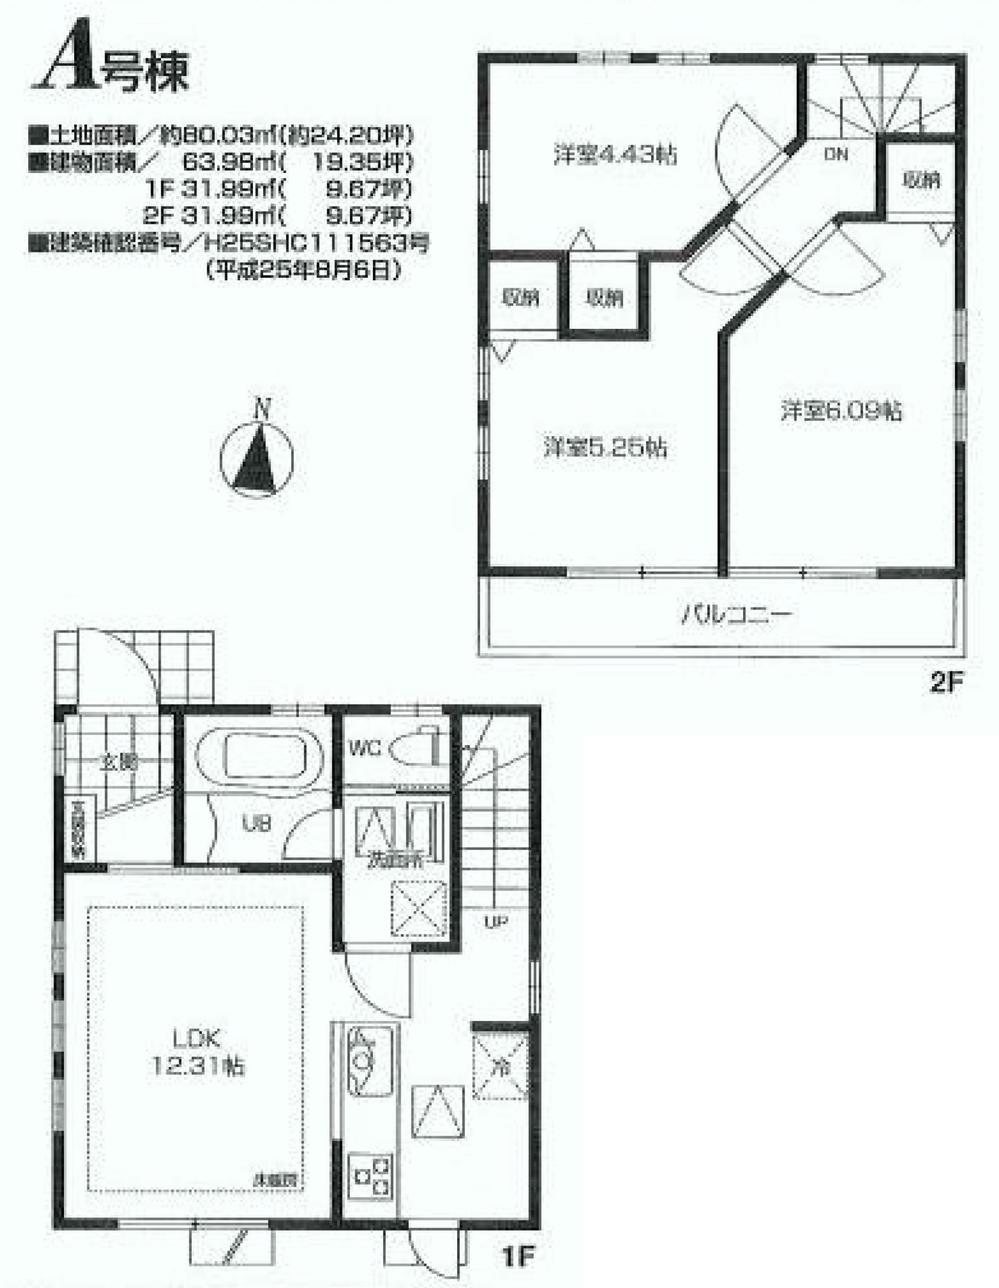 Floor plan. 44,800,000 yen, 3LDK, Land area 80.03 sq m , Building area 63.98 sq m 1 floor two-story living room